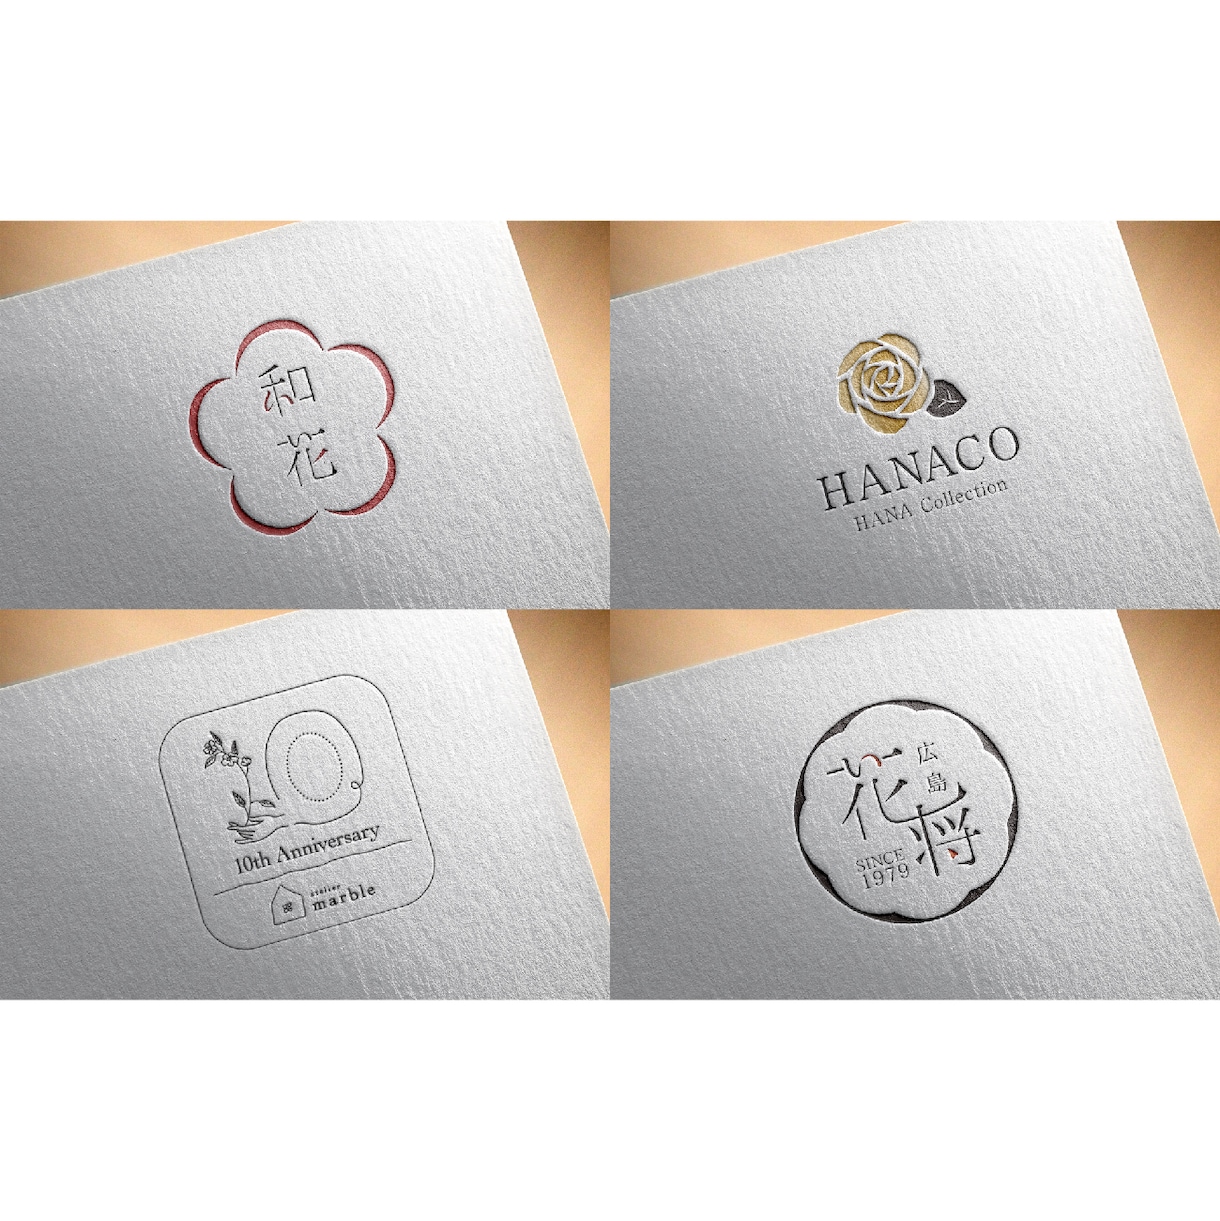 依頼者様の想いの込もったロゴ制作いたします ロゴを9500円で制作します。Youtubeアイコンも可！ イメージ1